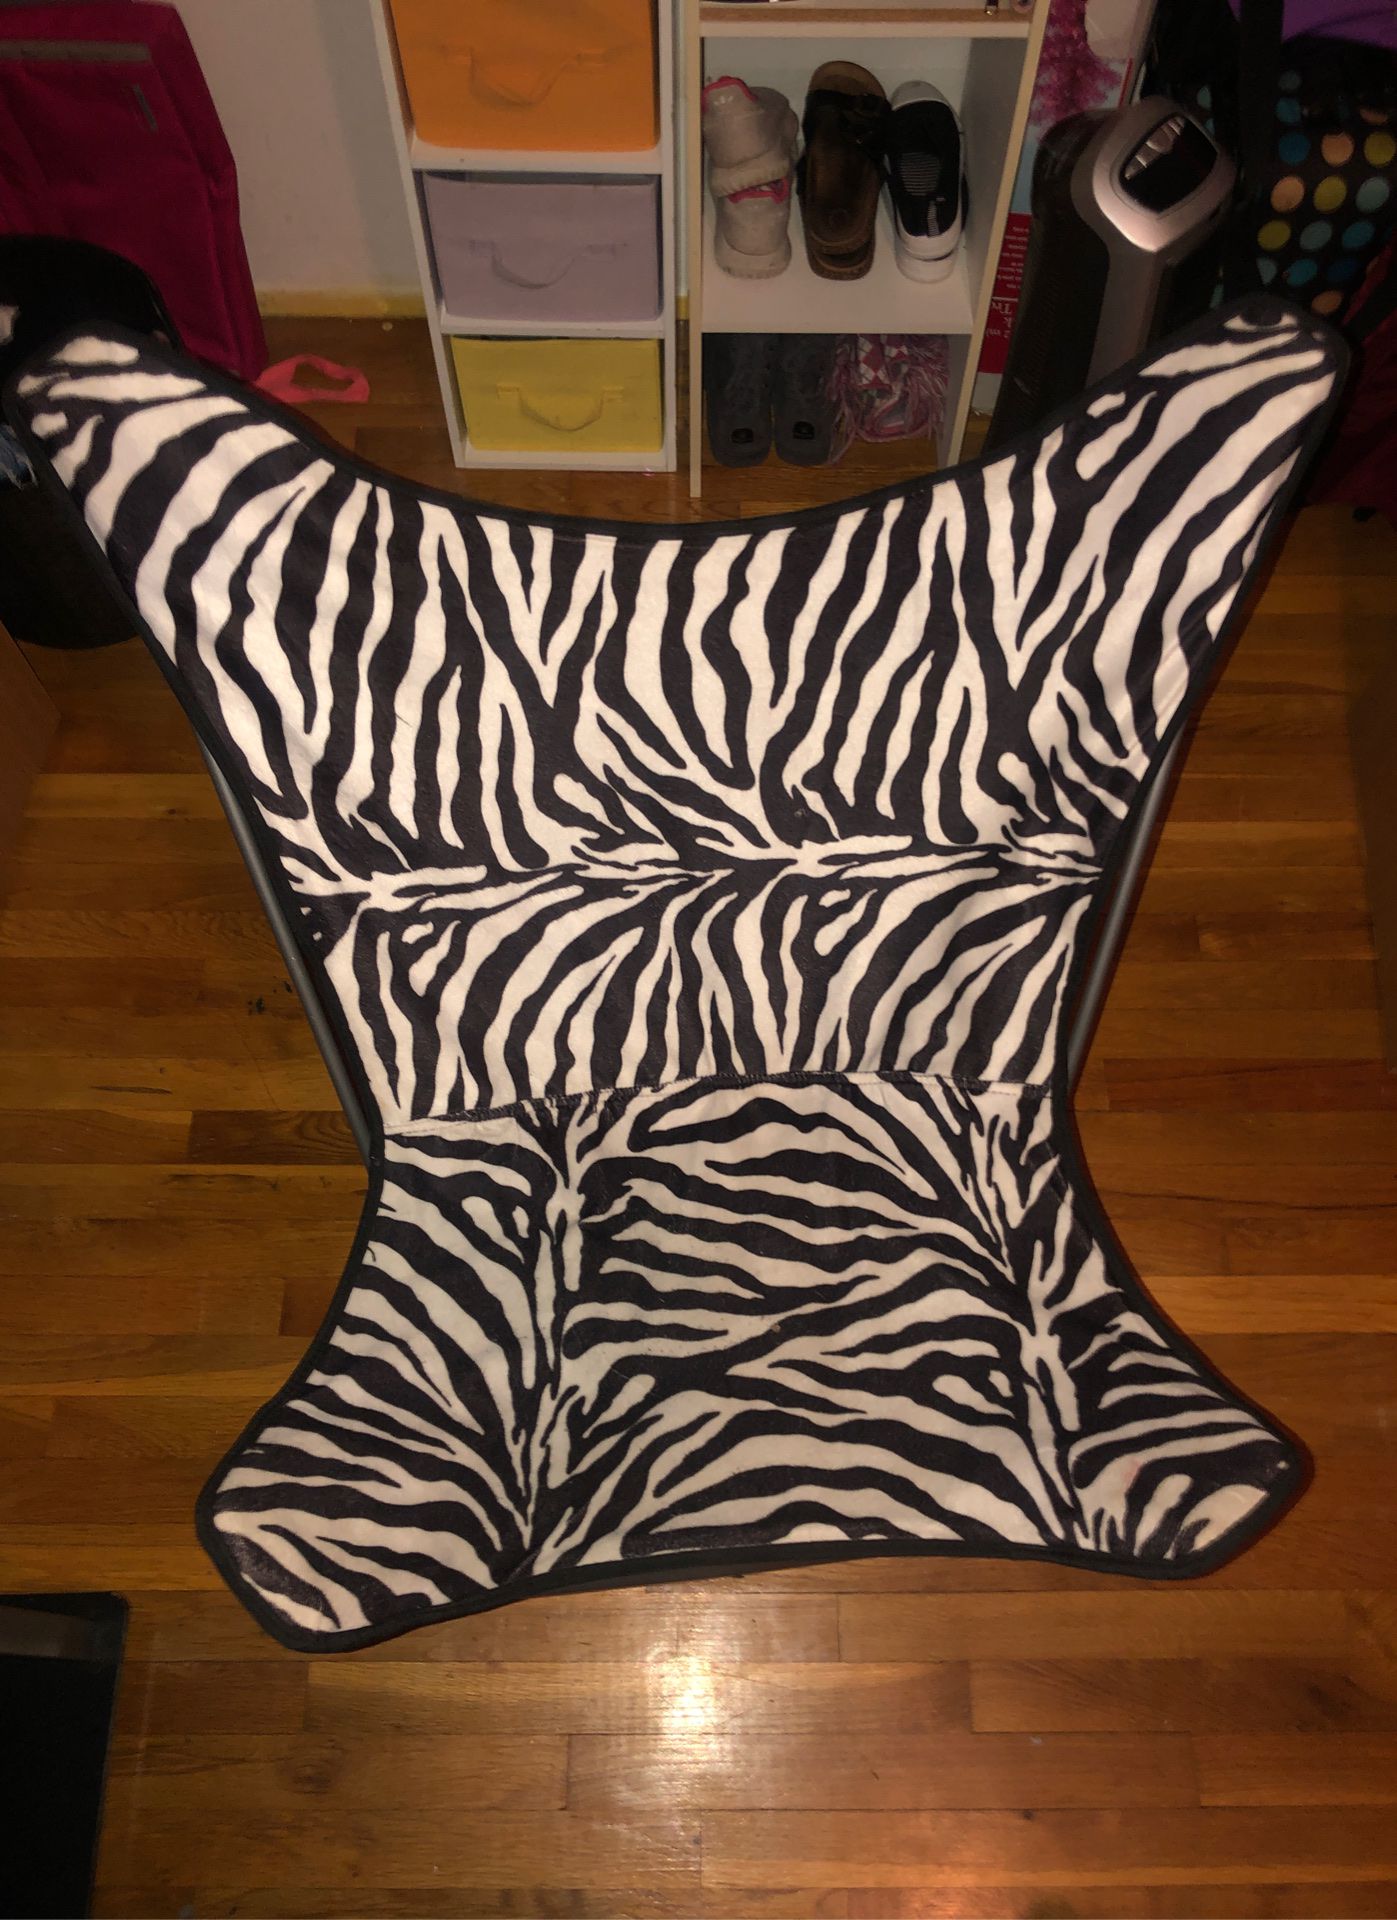 Zebra chair